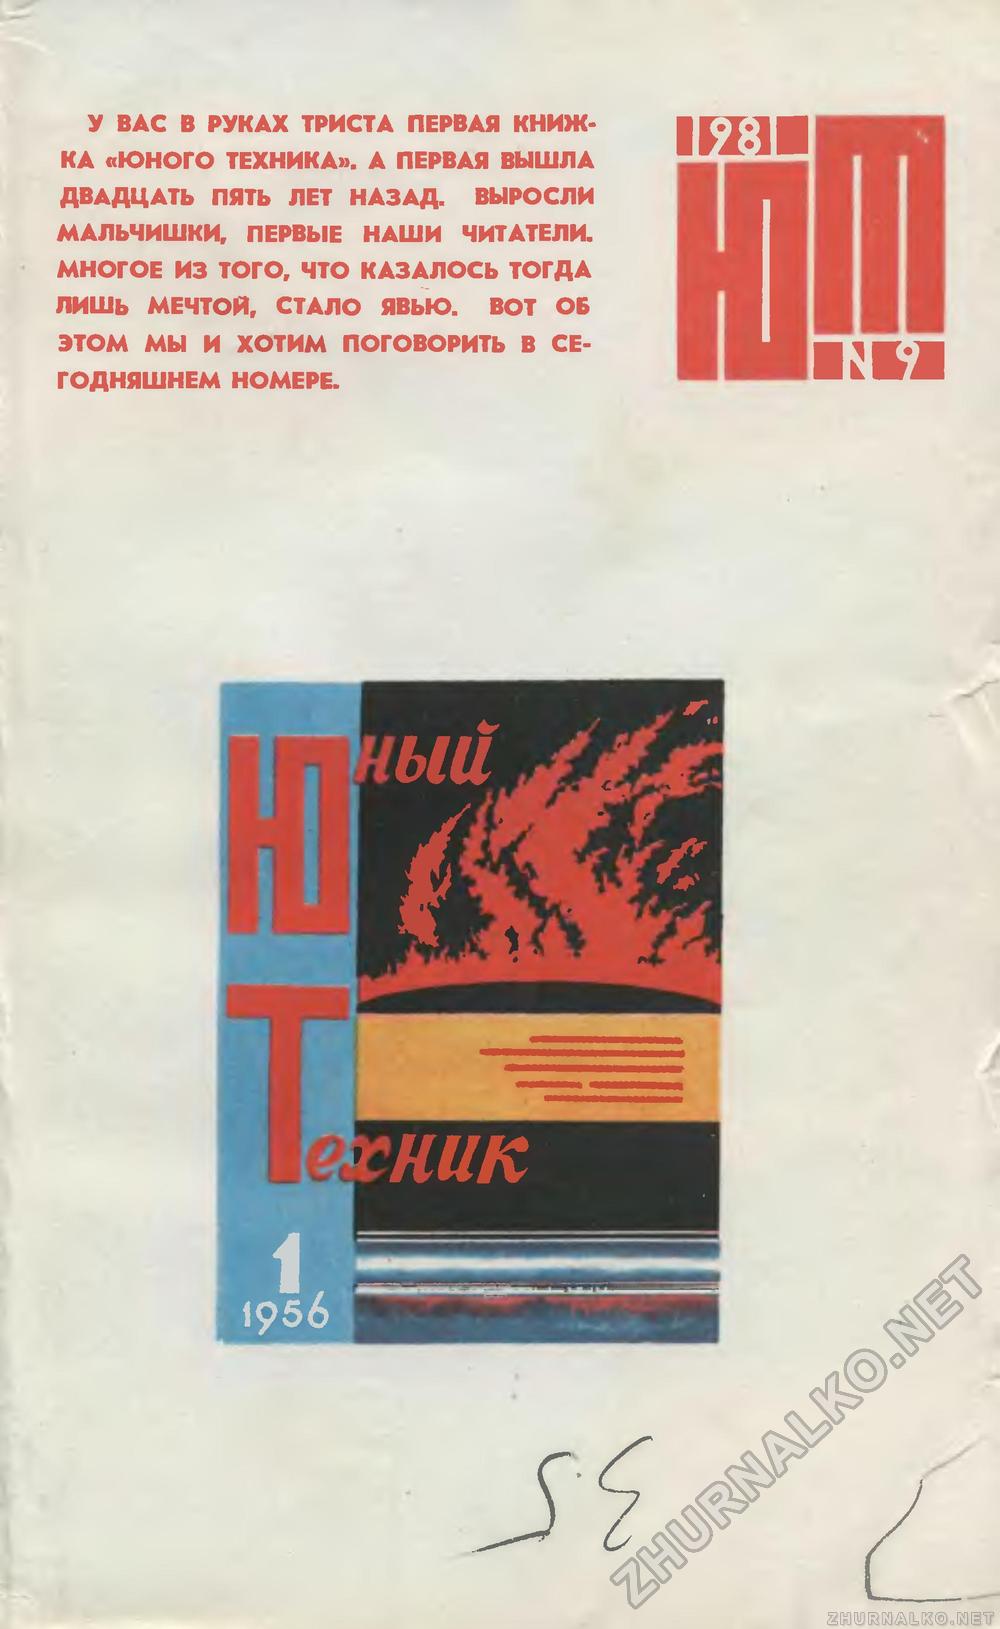   1981-09,  1